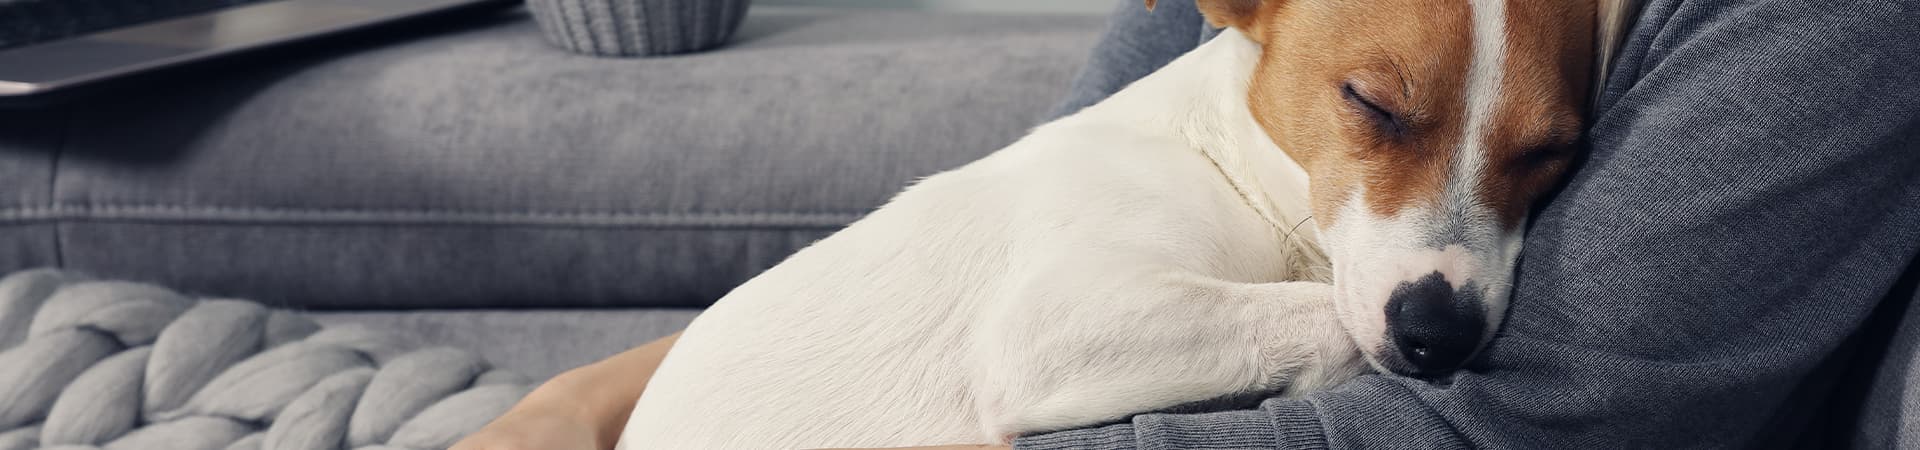 Jack-Russel-Terrier schläft auf dem Bauch seines Besitzers